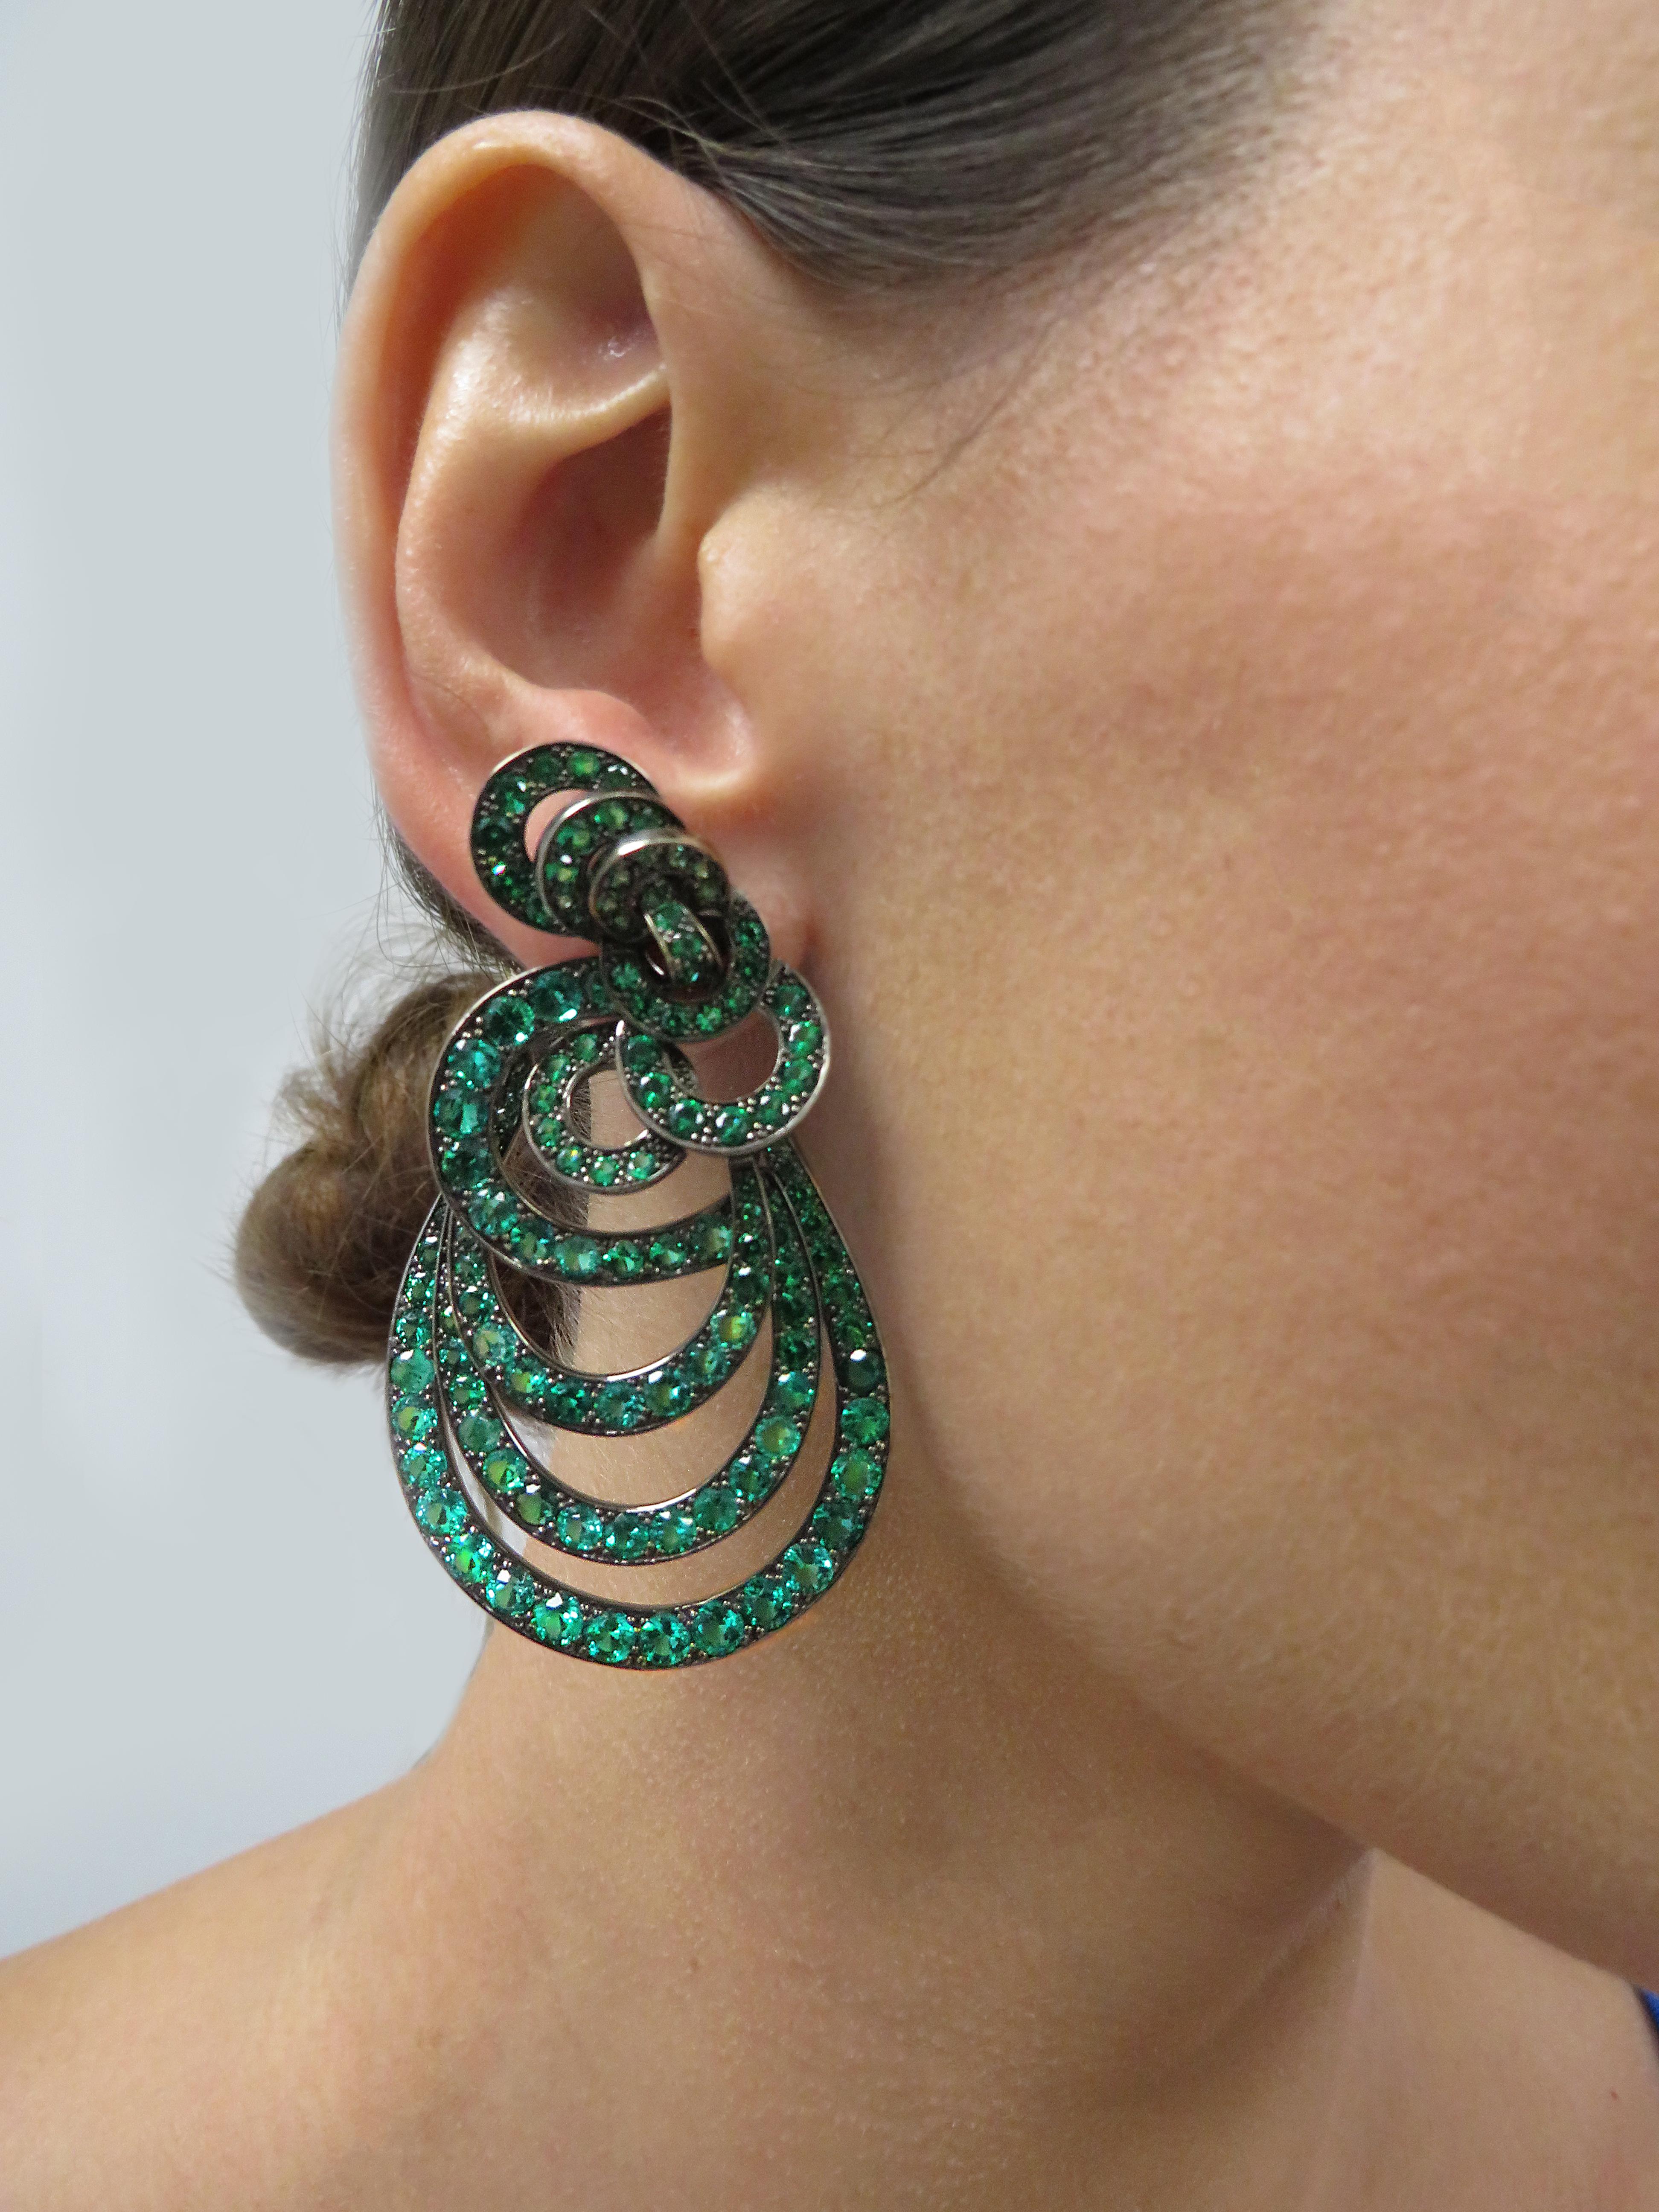 Round Cut Vivid Diamonds 18 Carat Emerald Earrings For Sale